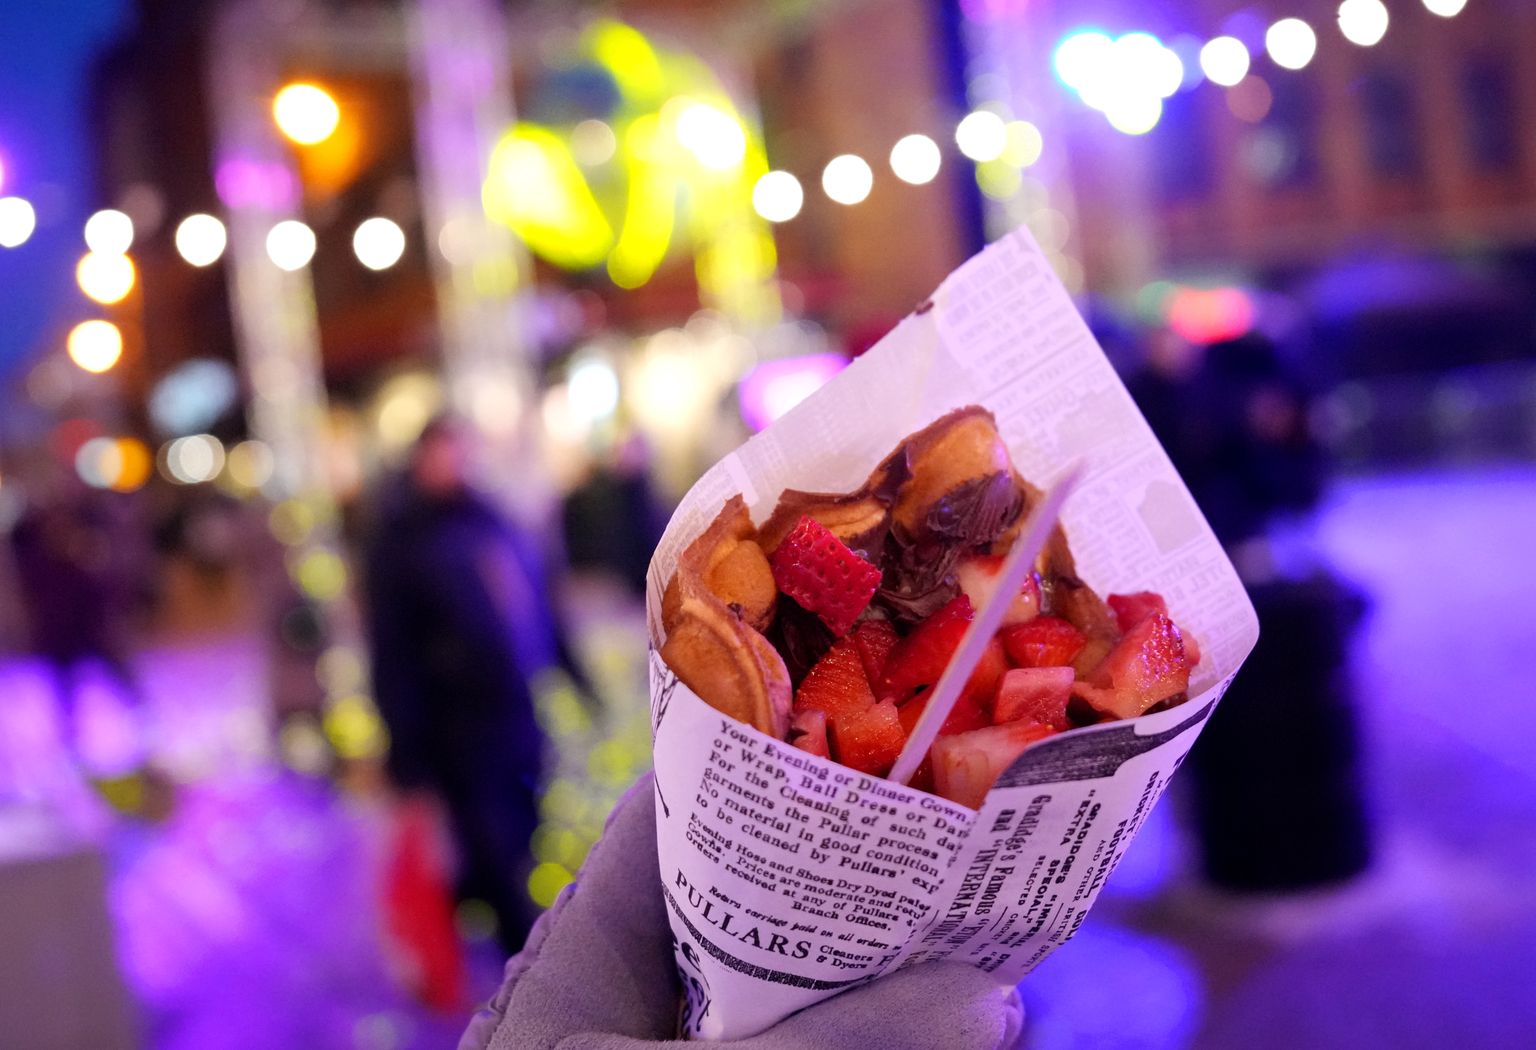 "Vecrīgas modināšanas nedēļas" ietvaros notiek "Street Food" festivāls Kaļķu un Vaļņu ielu krustojumā.